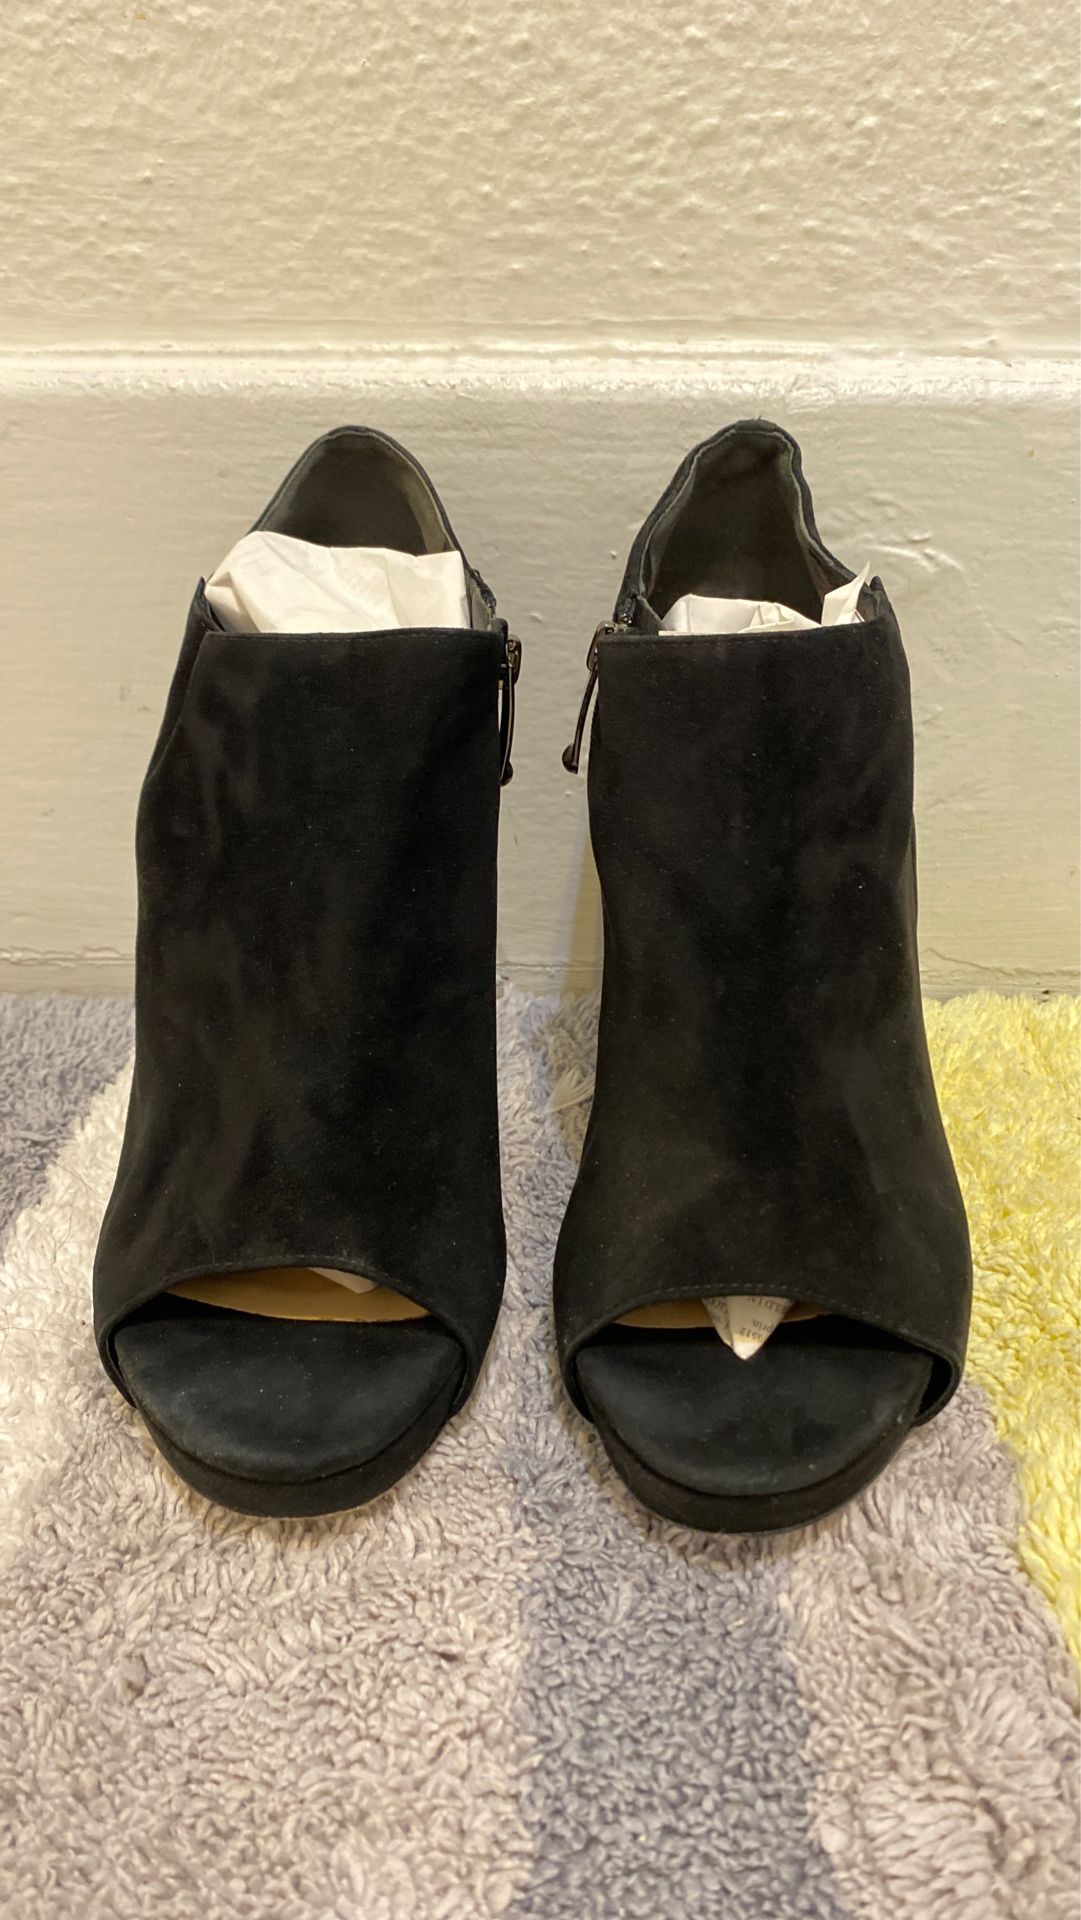 VIA SPIGA black suede heels. Size 7 1/2.